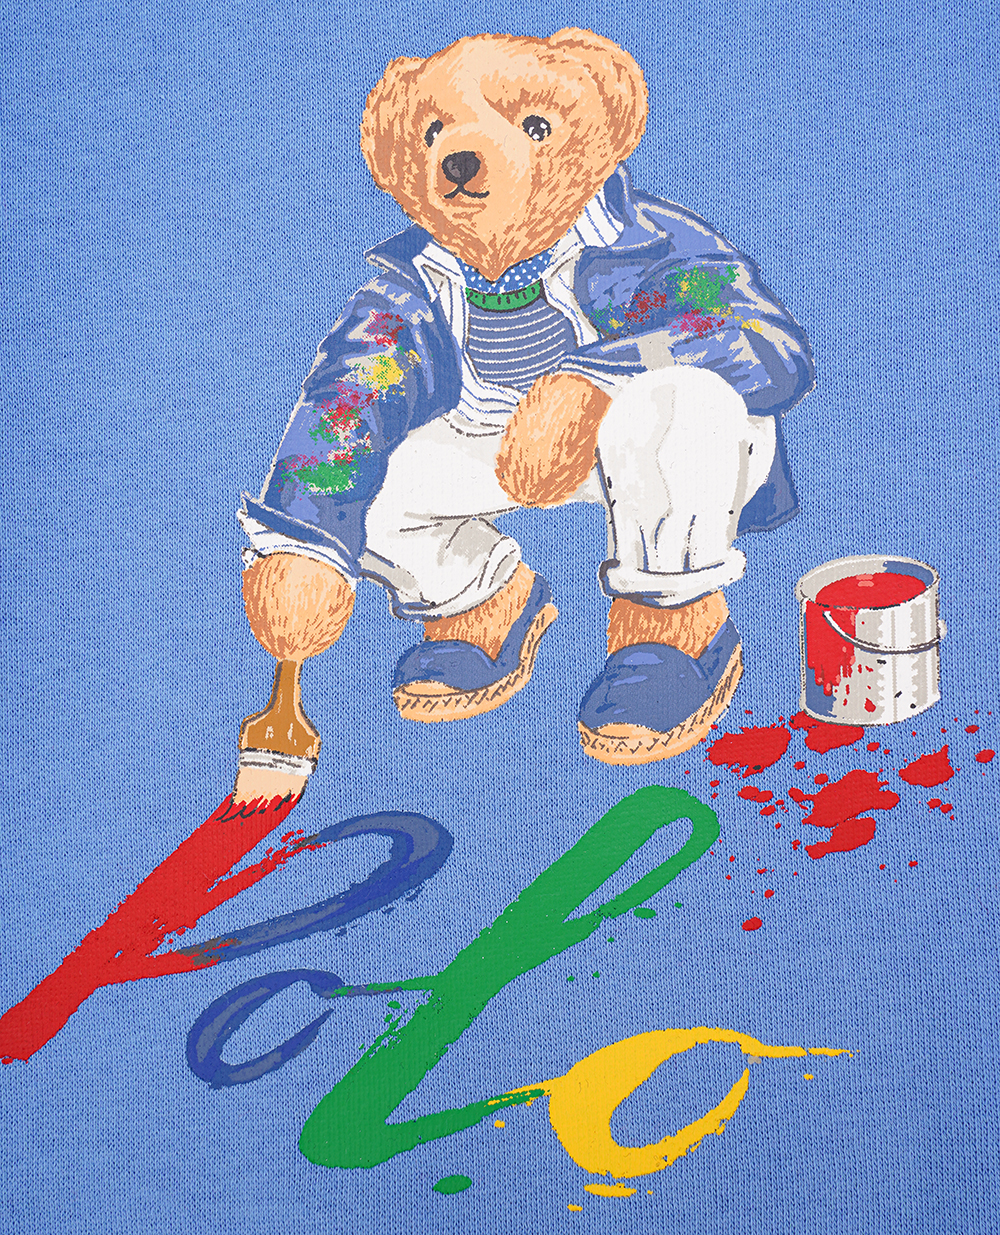 Детский свитшот Polo Bear Polo Ralph Lauren Kids 320919722004, синий цвет • Купить в интернет-магазине Kameron